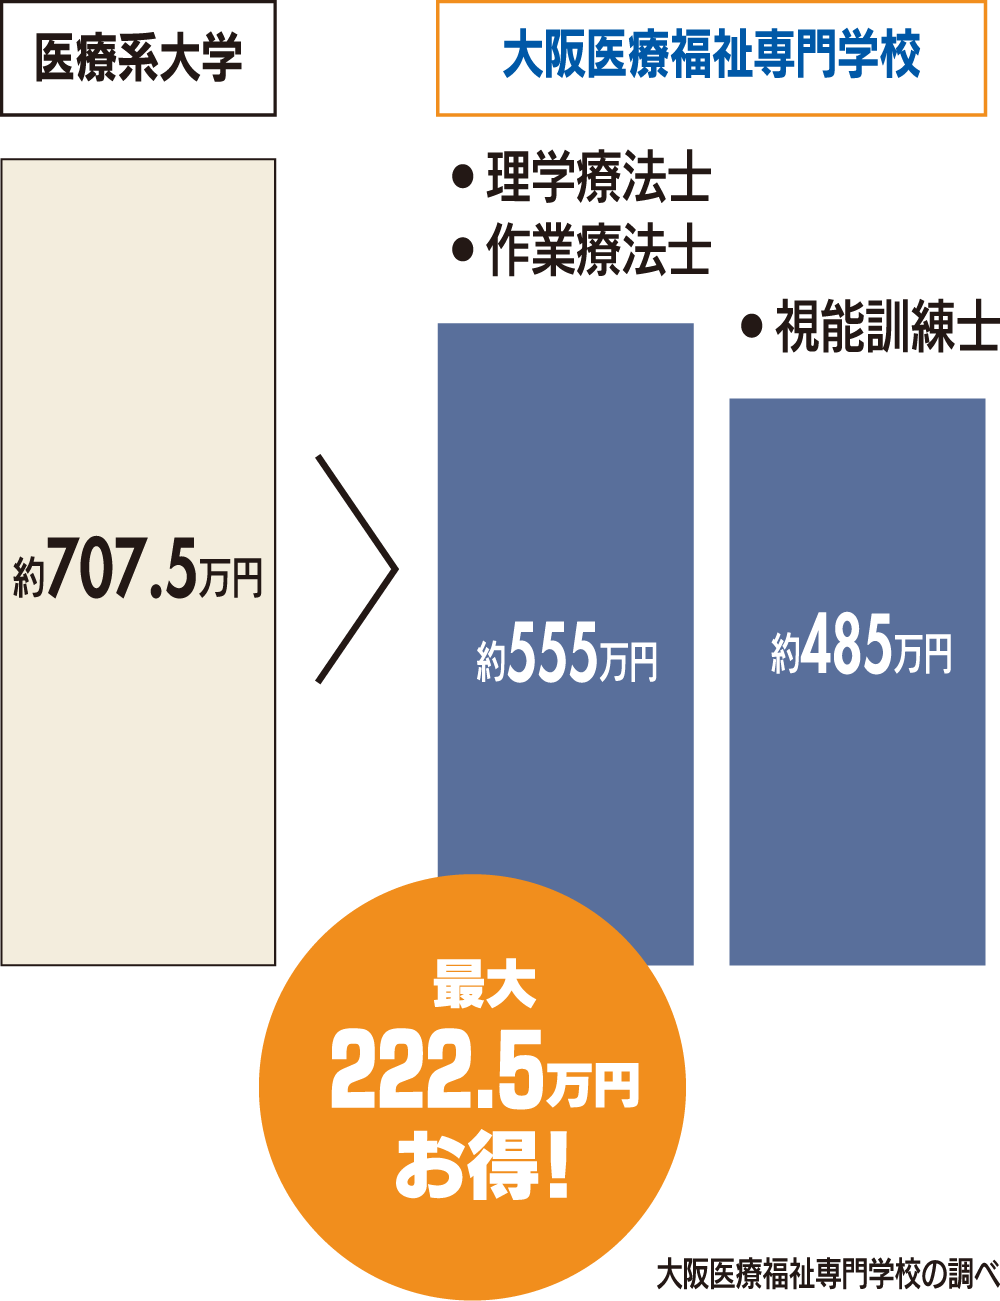 大阪医療福祉専門学校では、大学よりも学費を安く「医療系国家資格」+「支援教育専門士」+「大学卒業資格」の取得が出来る!!